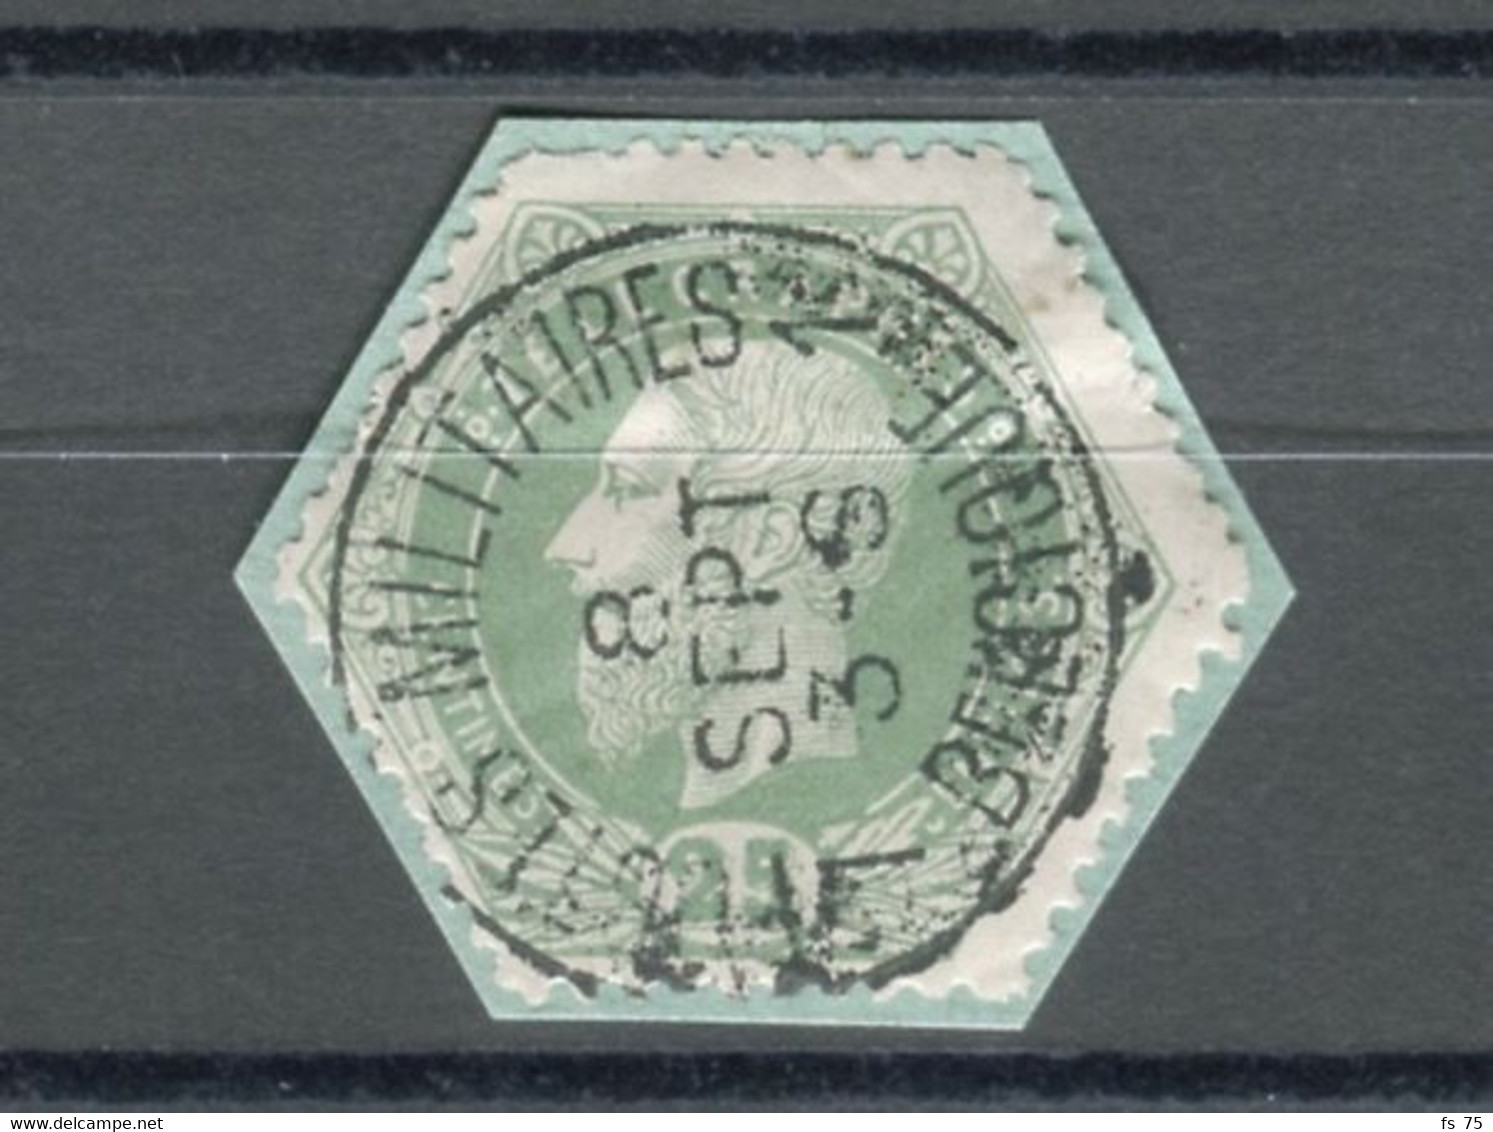 BELGIQUE - COB T6 12 25C VERT SIMPLE CERCLE POSTES MILITAIRES 1 BELGIQUE - Briefmarken